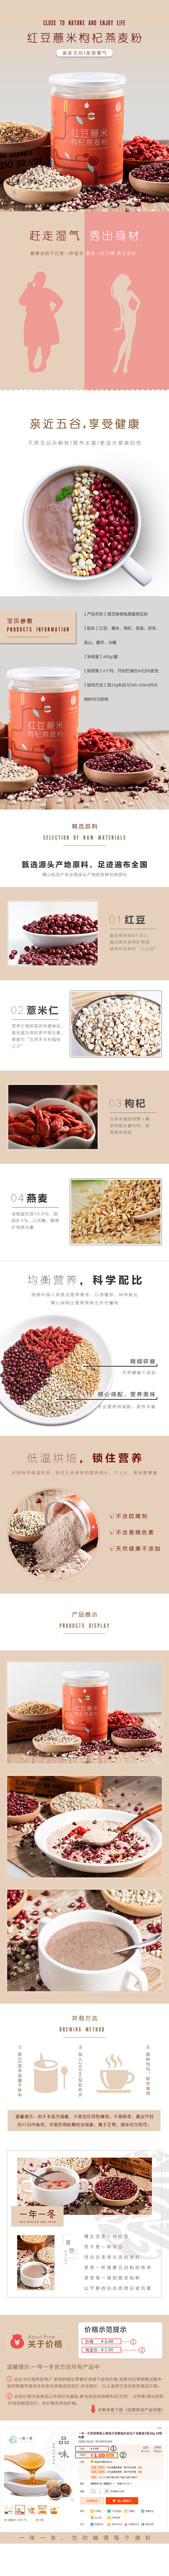 红豆薏米粉详情页 五谷杂粮粉